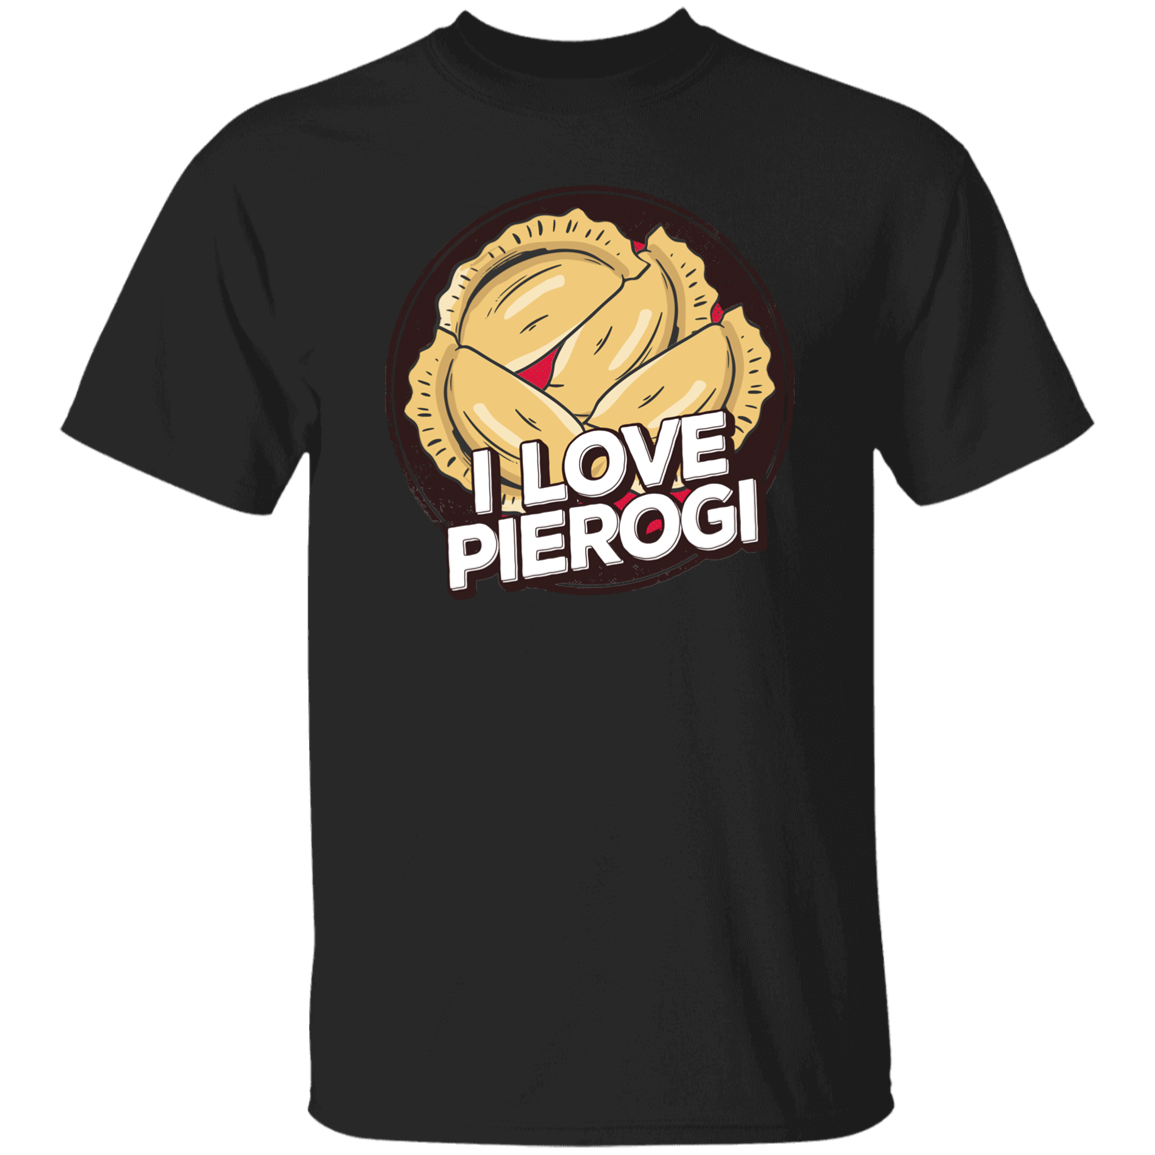 I Love Pierogi Apparel CustomCat G500 5.3 oz. T-Shirt Black S